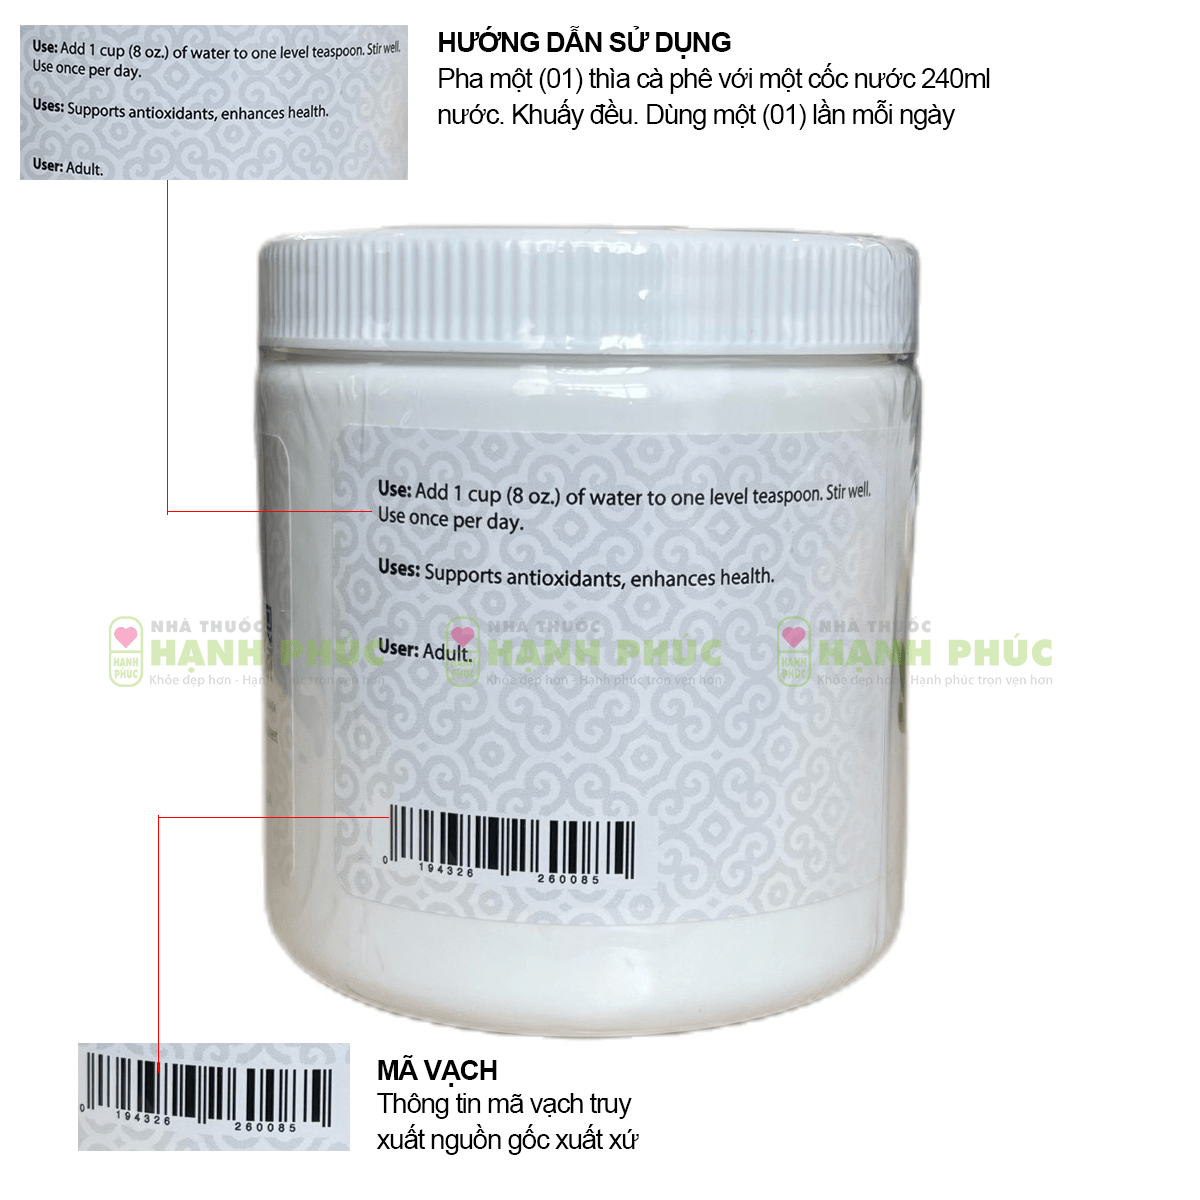 Hướng dẫn dùng và mã vạch in bên trên đằm thắm thành phầm bột diệp lục Unicity Super Chlorophyll Powder